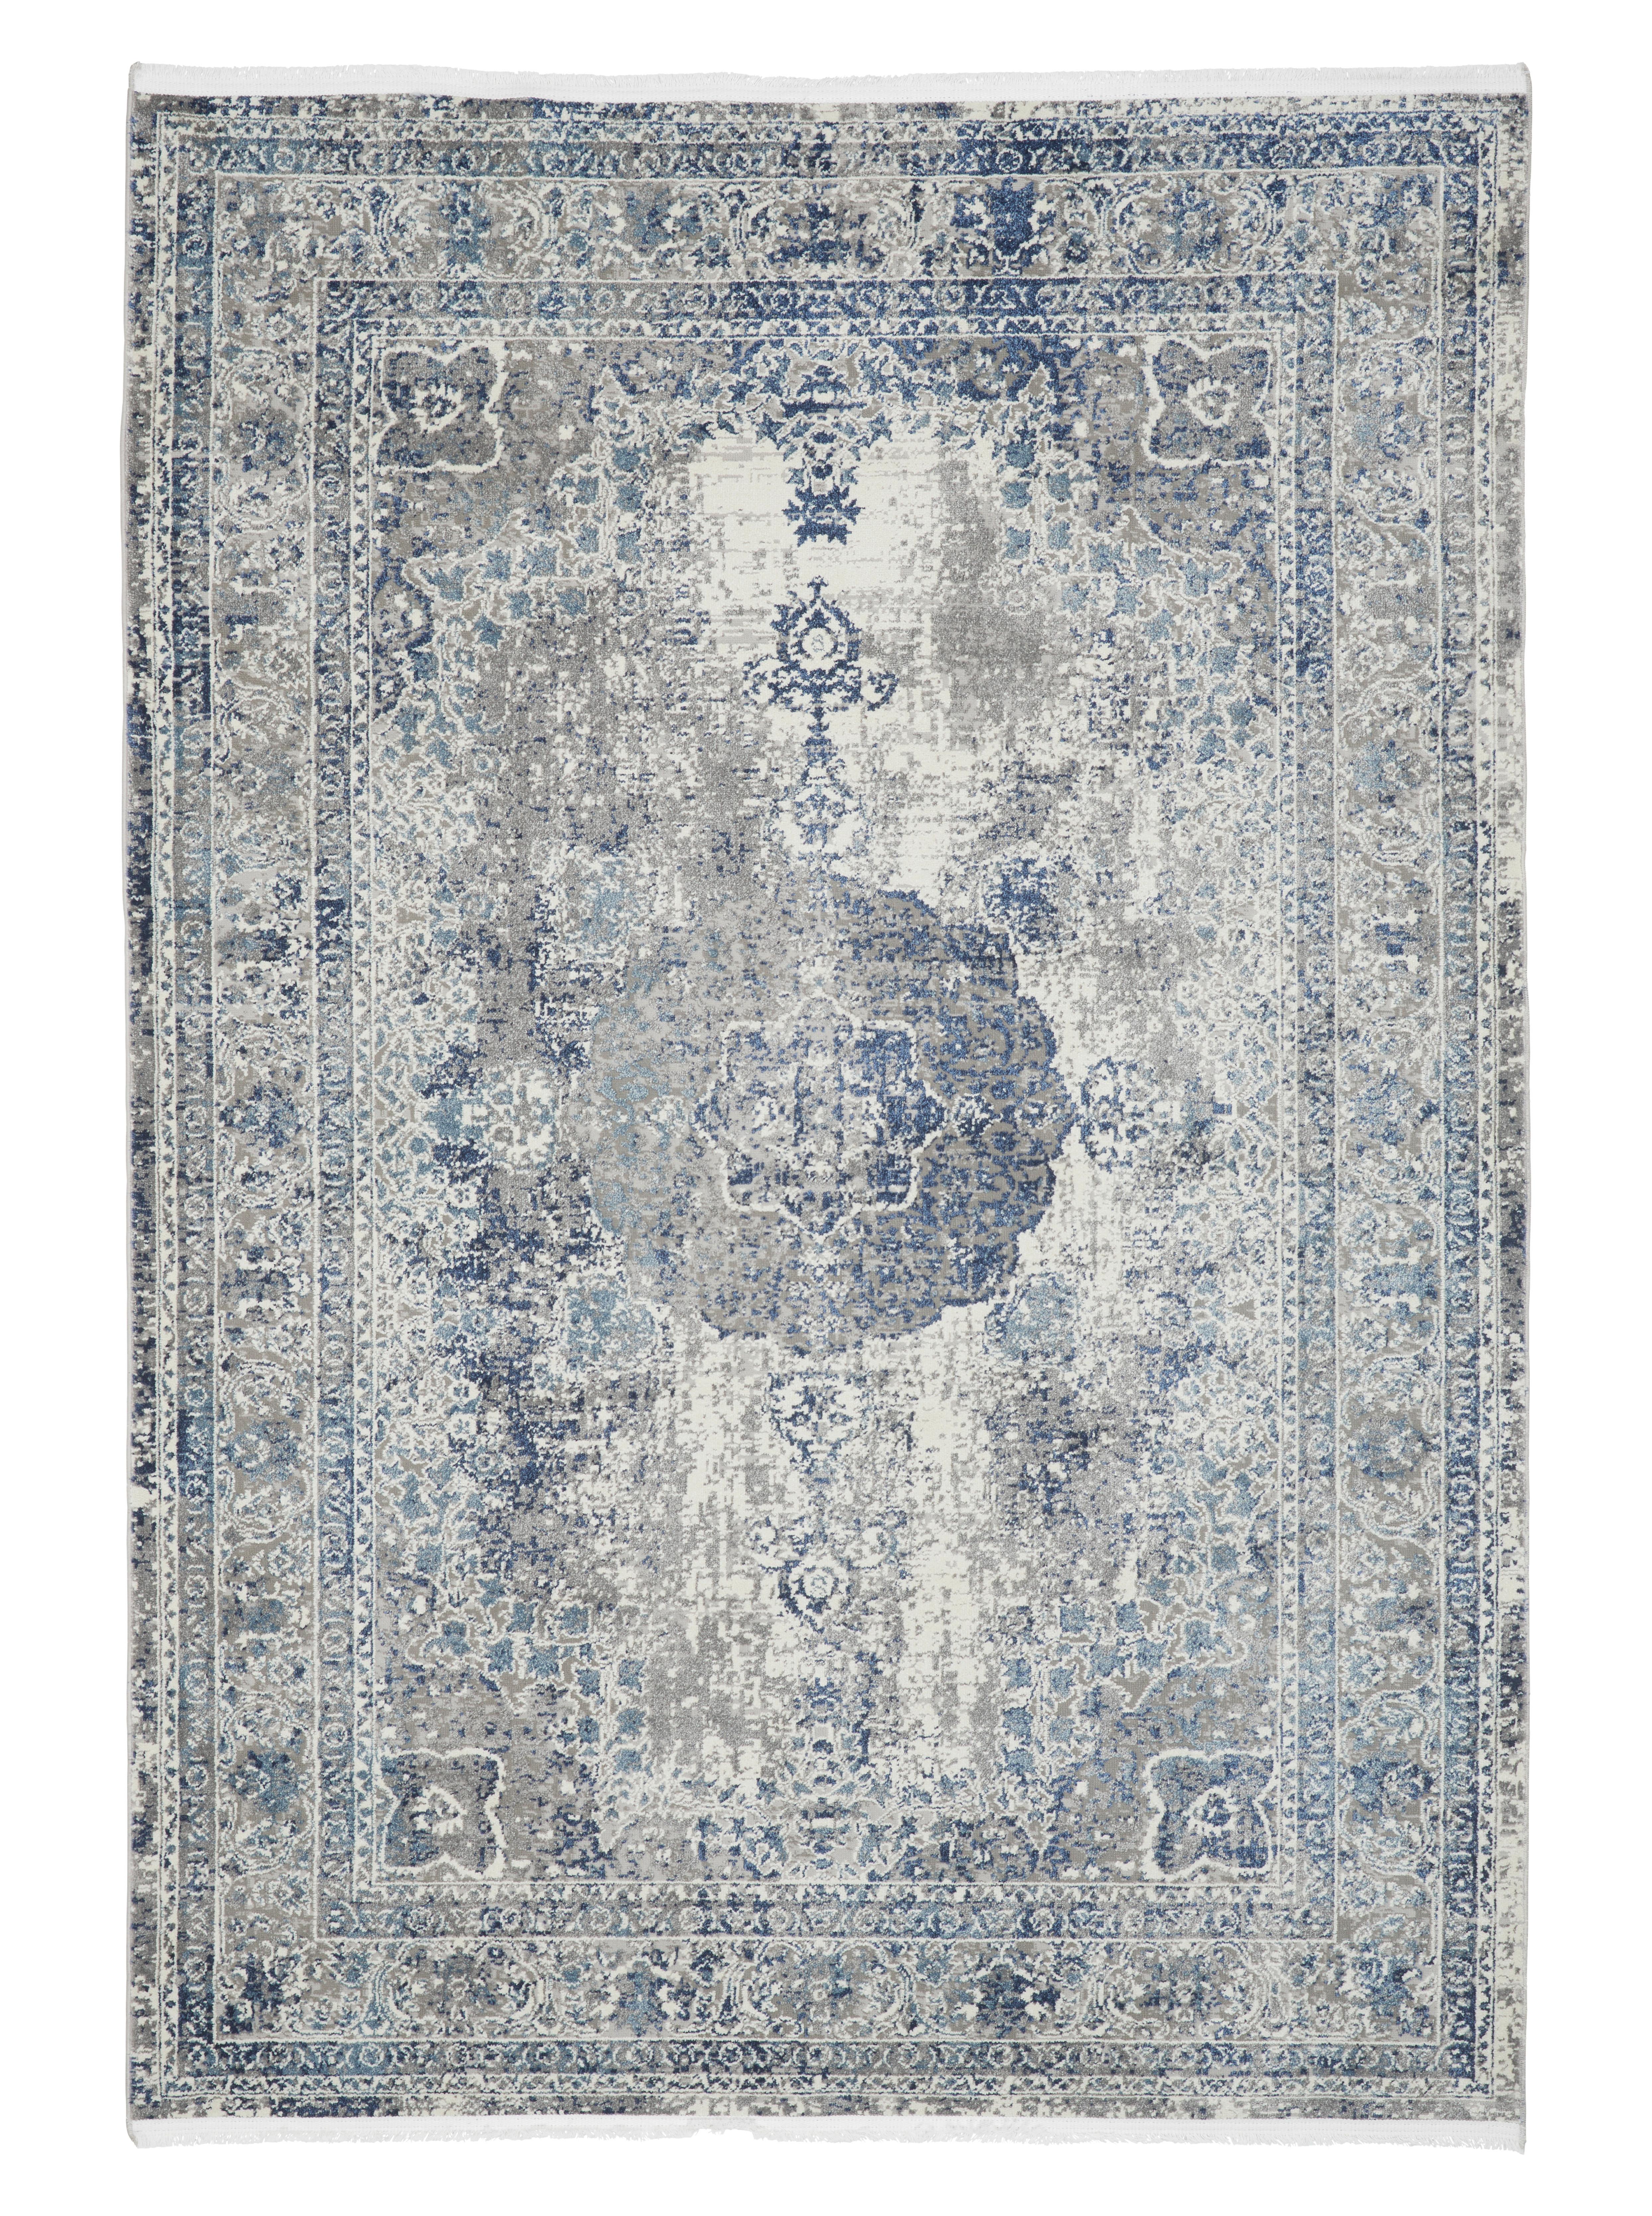 Tkaný Koberec Marcus 2, 120/170cm - krémová/světle modrá, textil (120null) - Modern Living